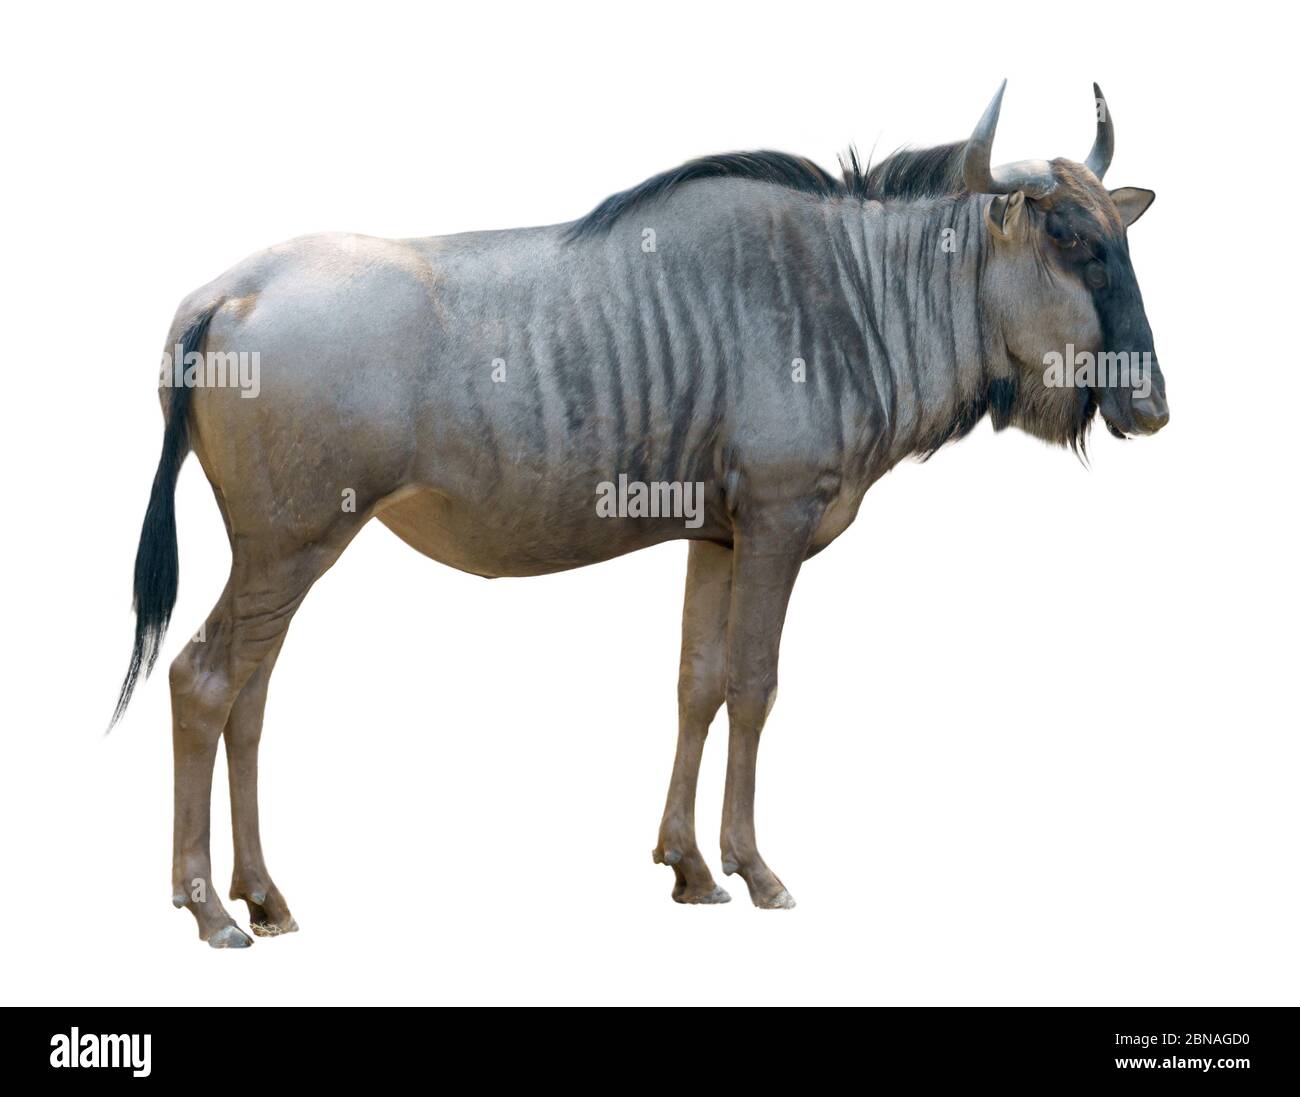 wildebeest o gnu isolato su sfondo bianco Foto Stock